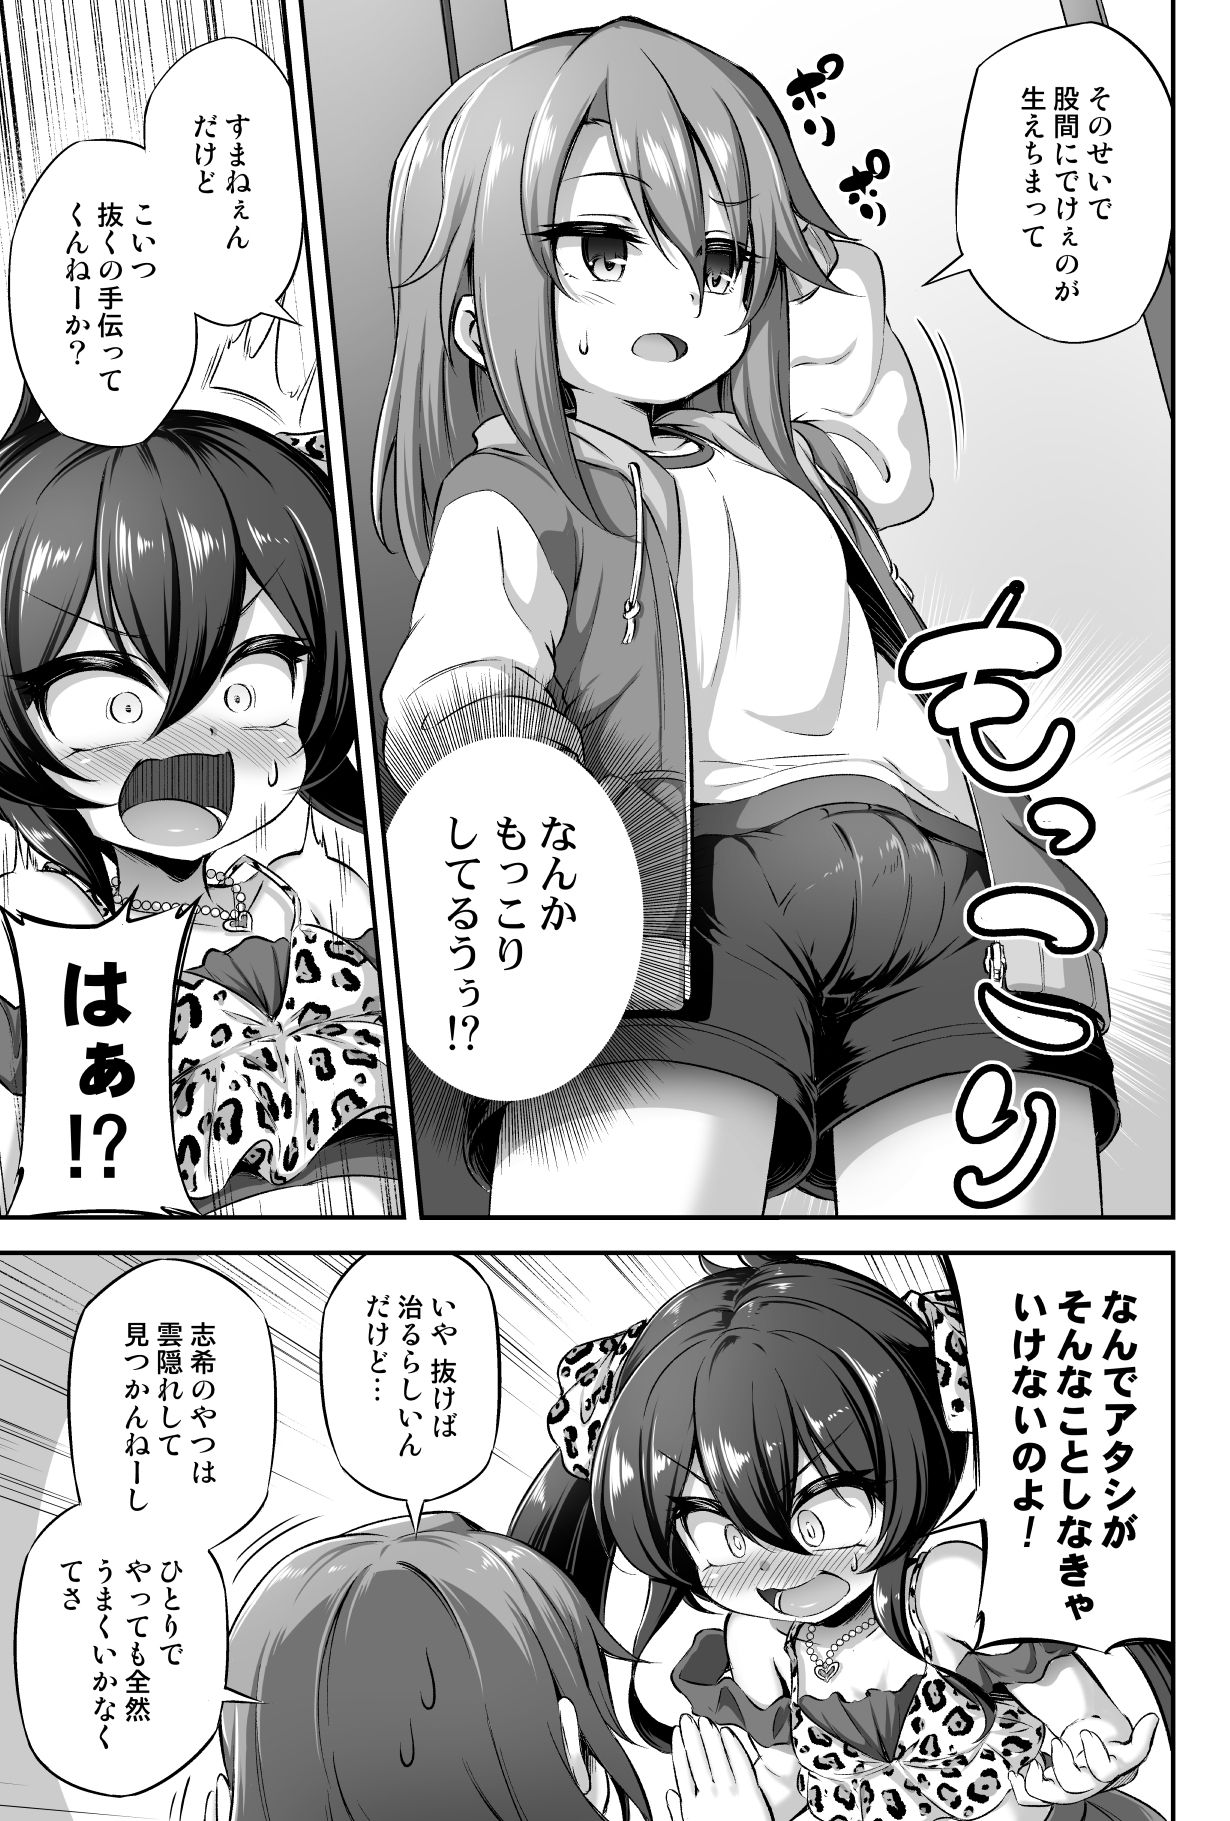 [Achromic (Musouduki)] Loli & Futa Vol. 13 (THE IDOLM@STER CINDERELLA GIRLS) [Digital] page 4 full